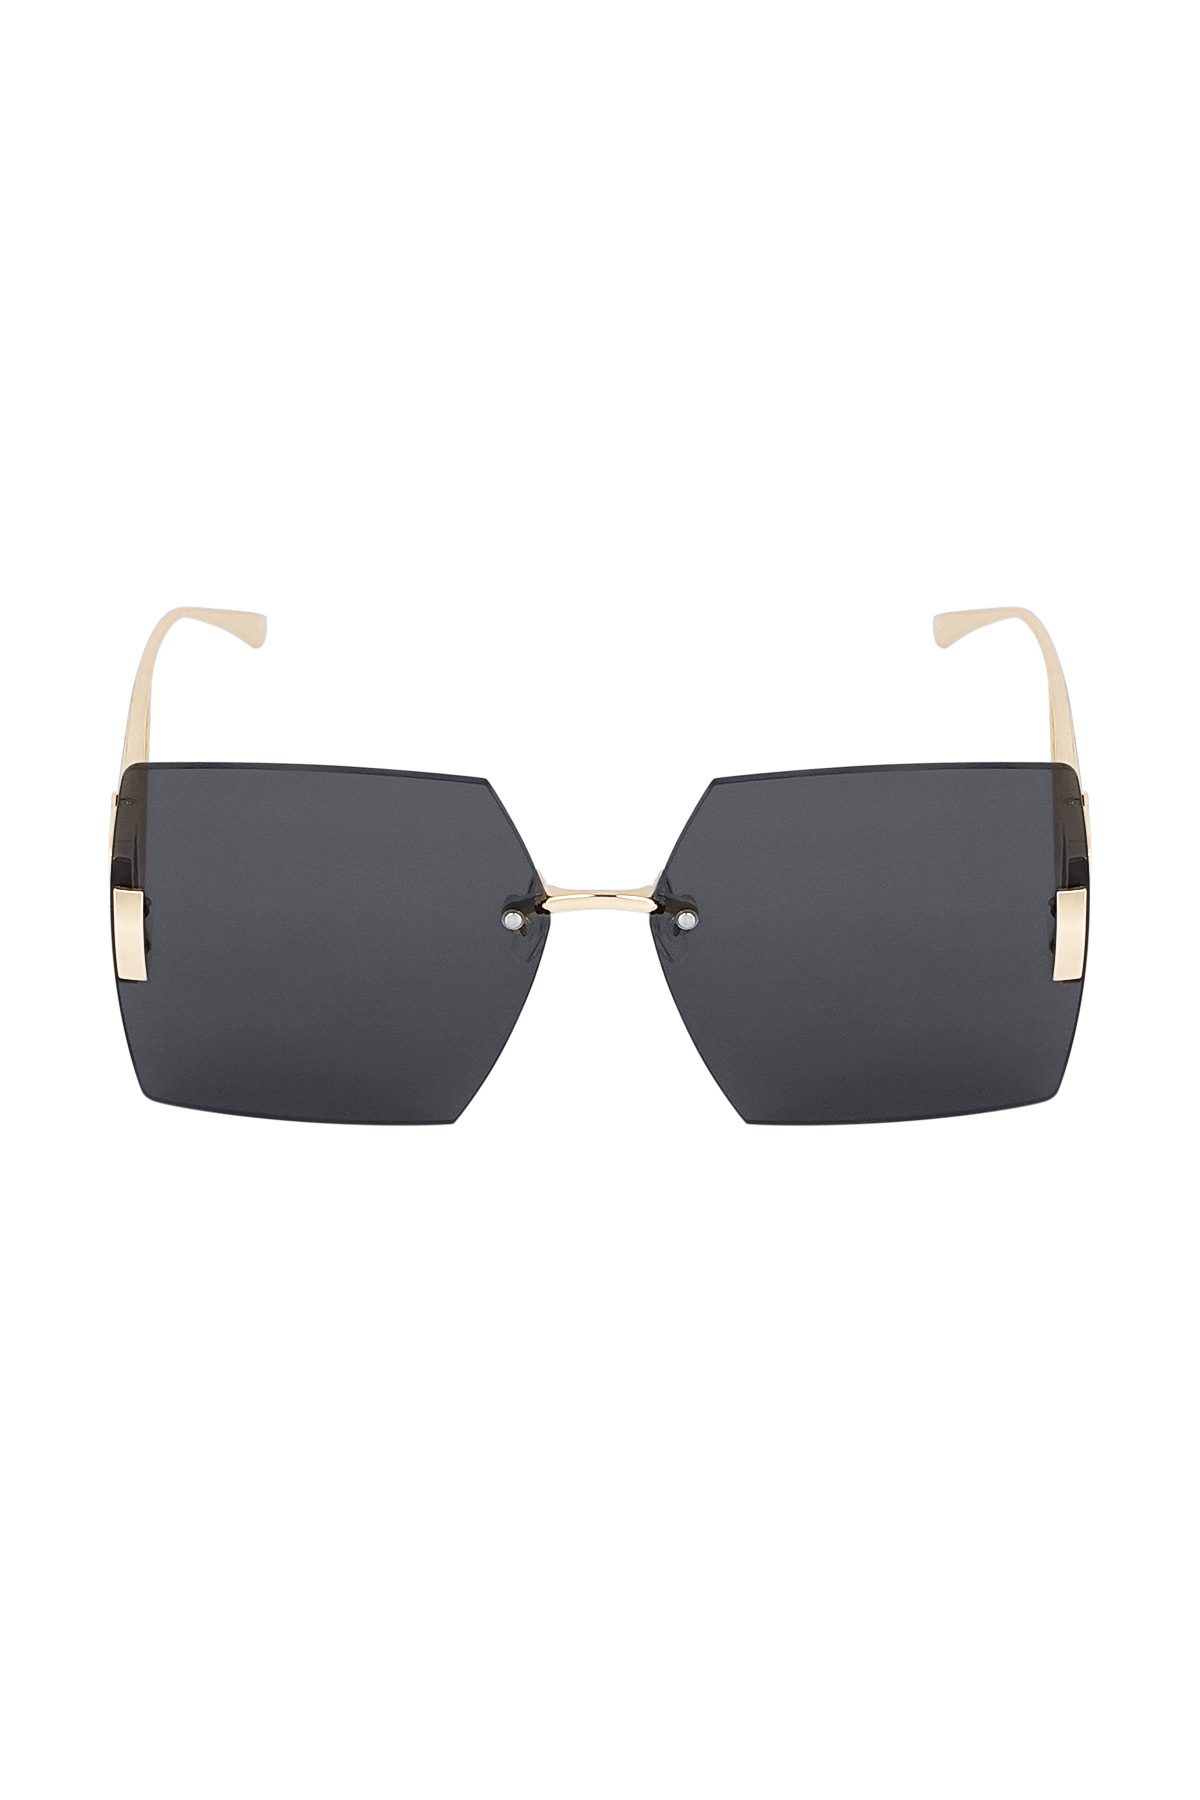 Rimless square sunglasses - gray/gold h5 Picture2